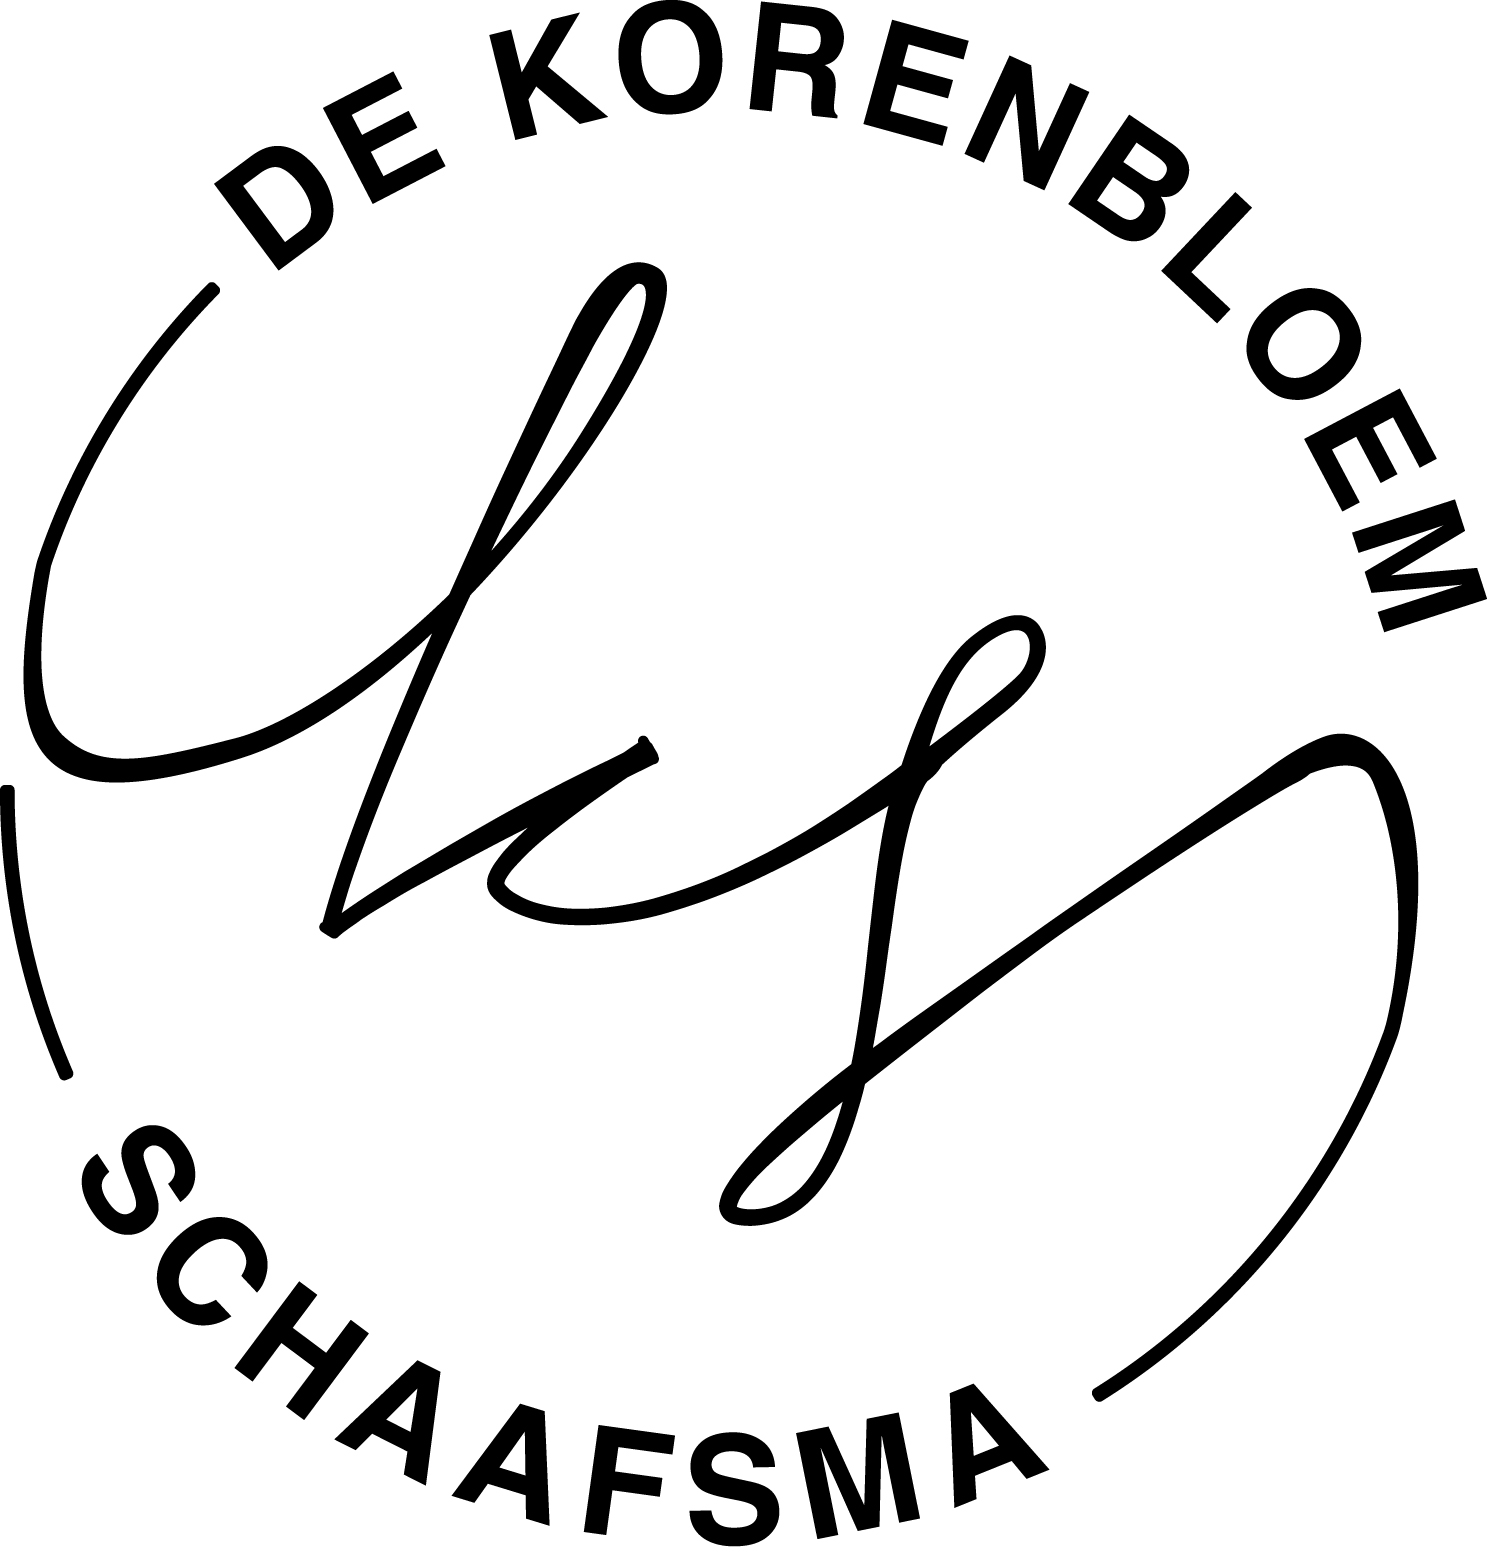 Banketbakkerij de Korenbloem & Schaafsma logo zwart wit rond